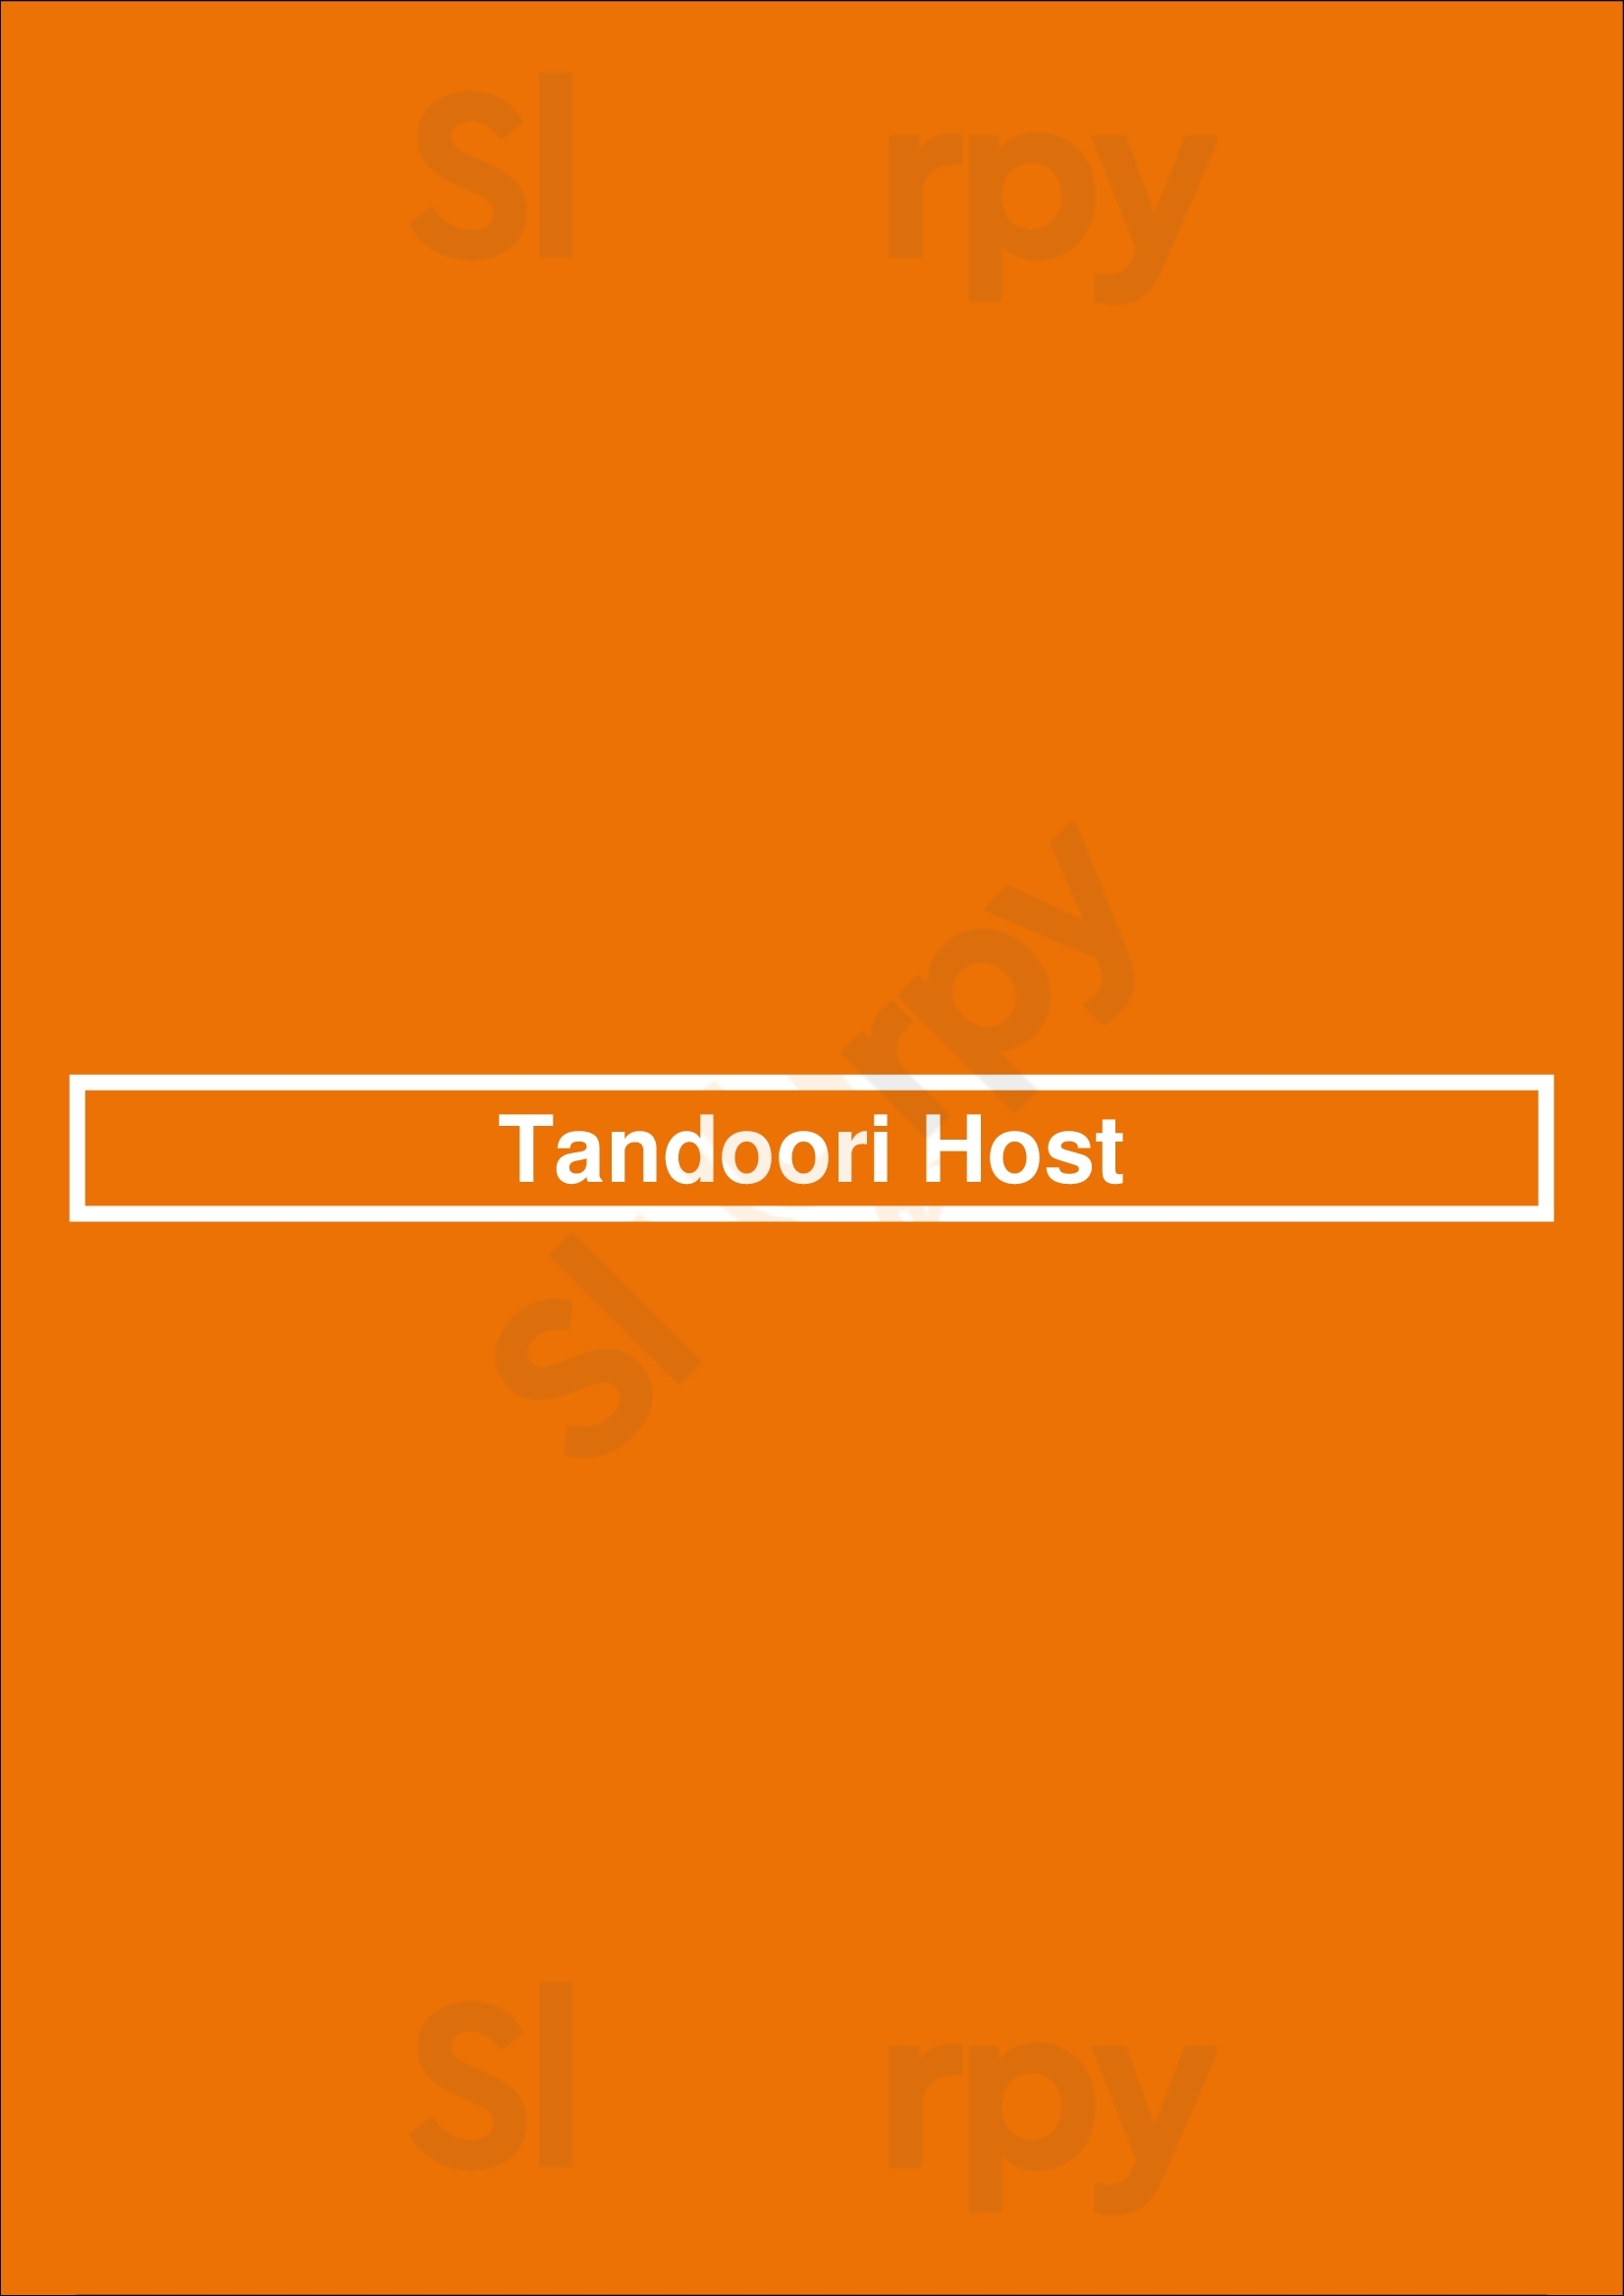 Tandoori Host Vaughan Menu - 1